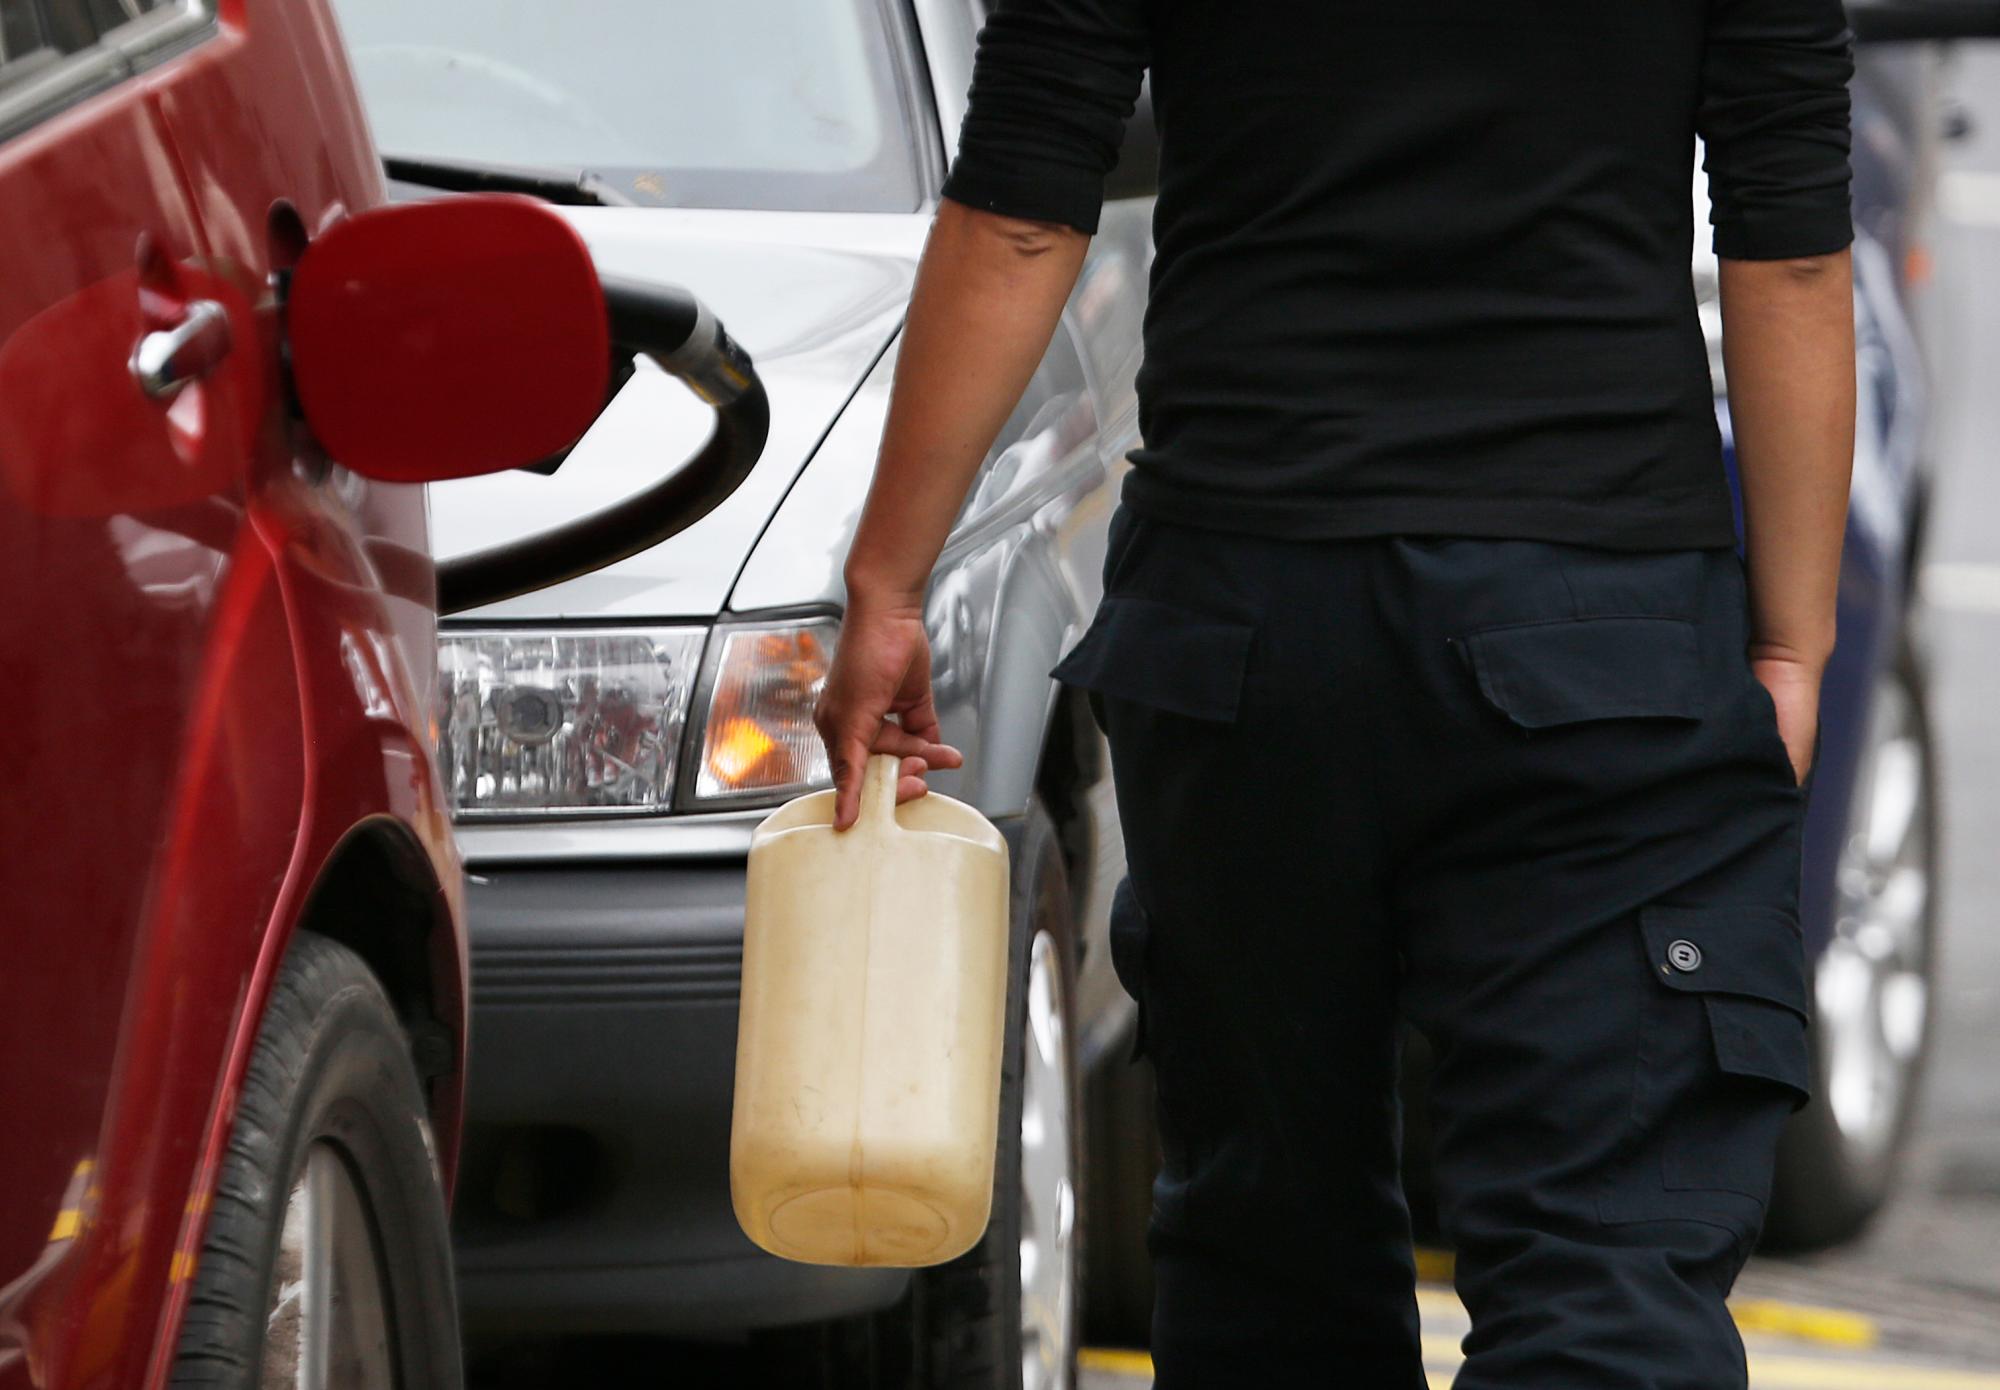 Un hombre lleva un contenedor para llenar con combustible en una estación de servicio, aunque se ha prohibido llenar todo menos un vehículo, durante una escasez en la distribución de combustible en la Ciudad de México.